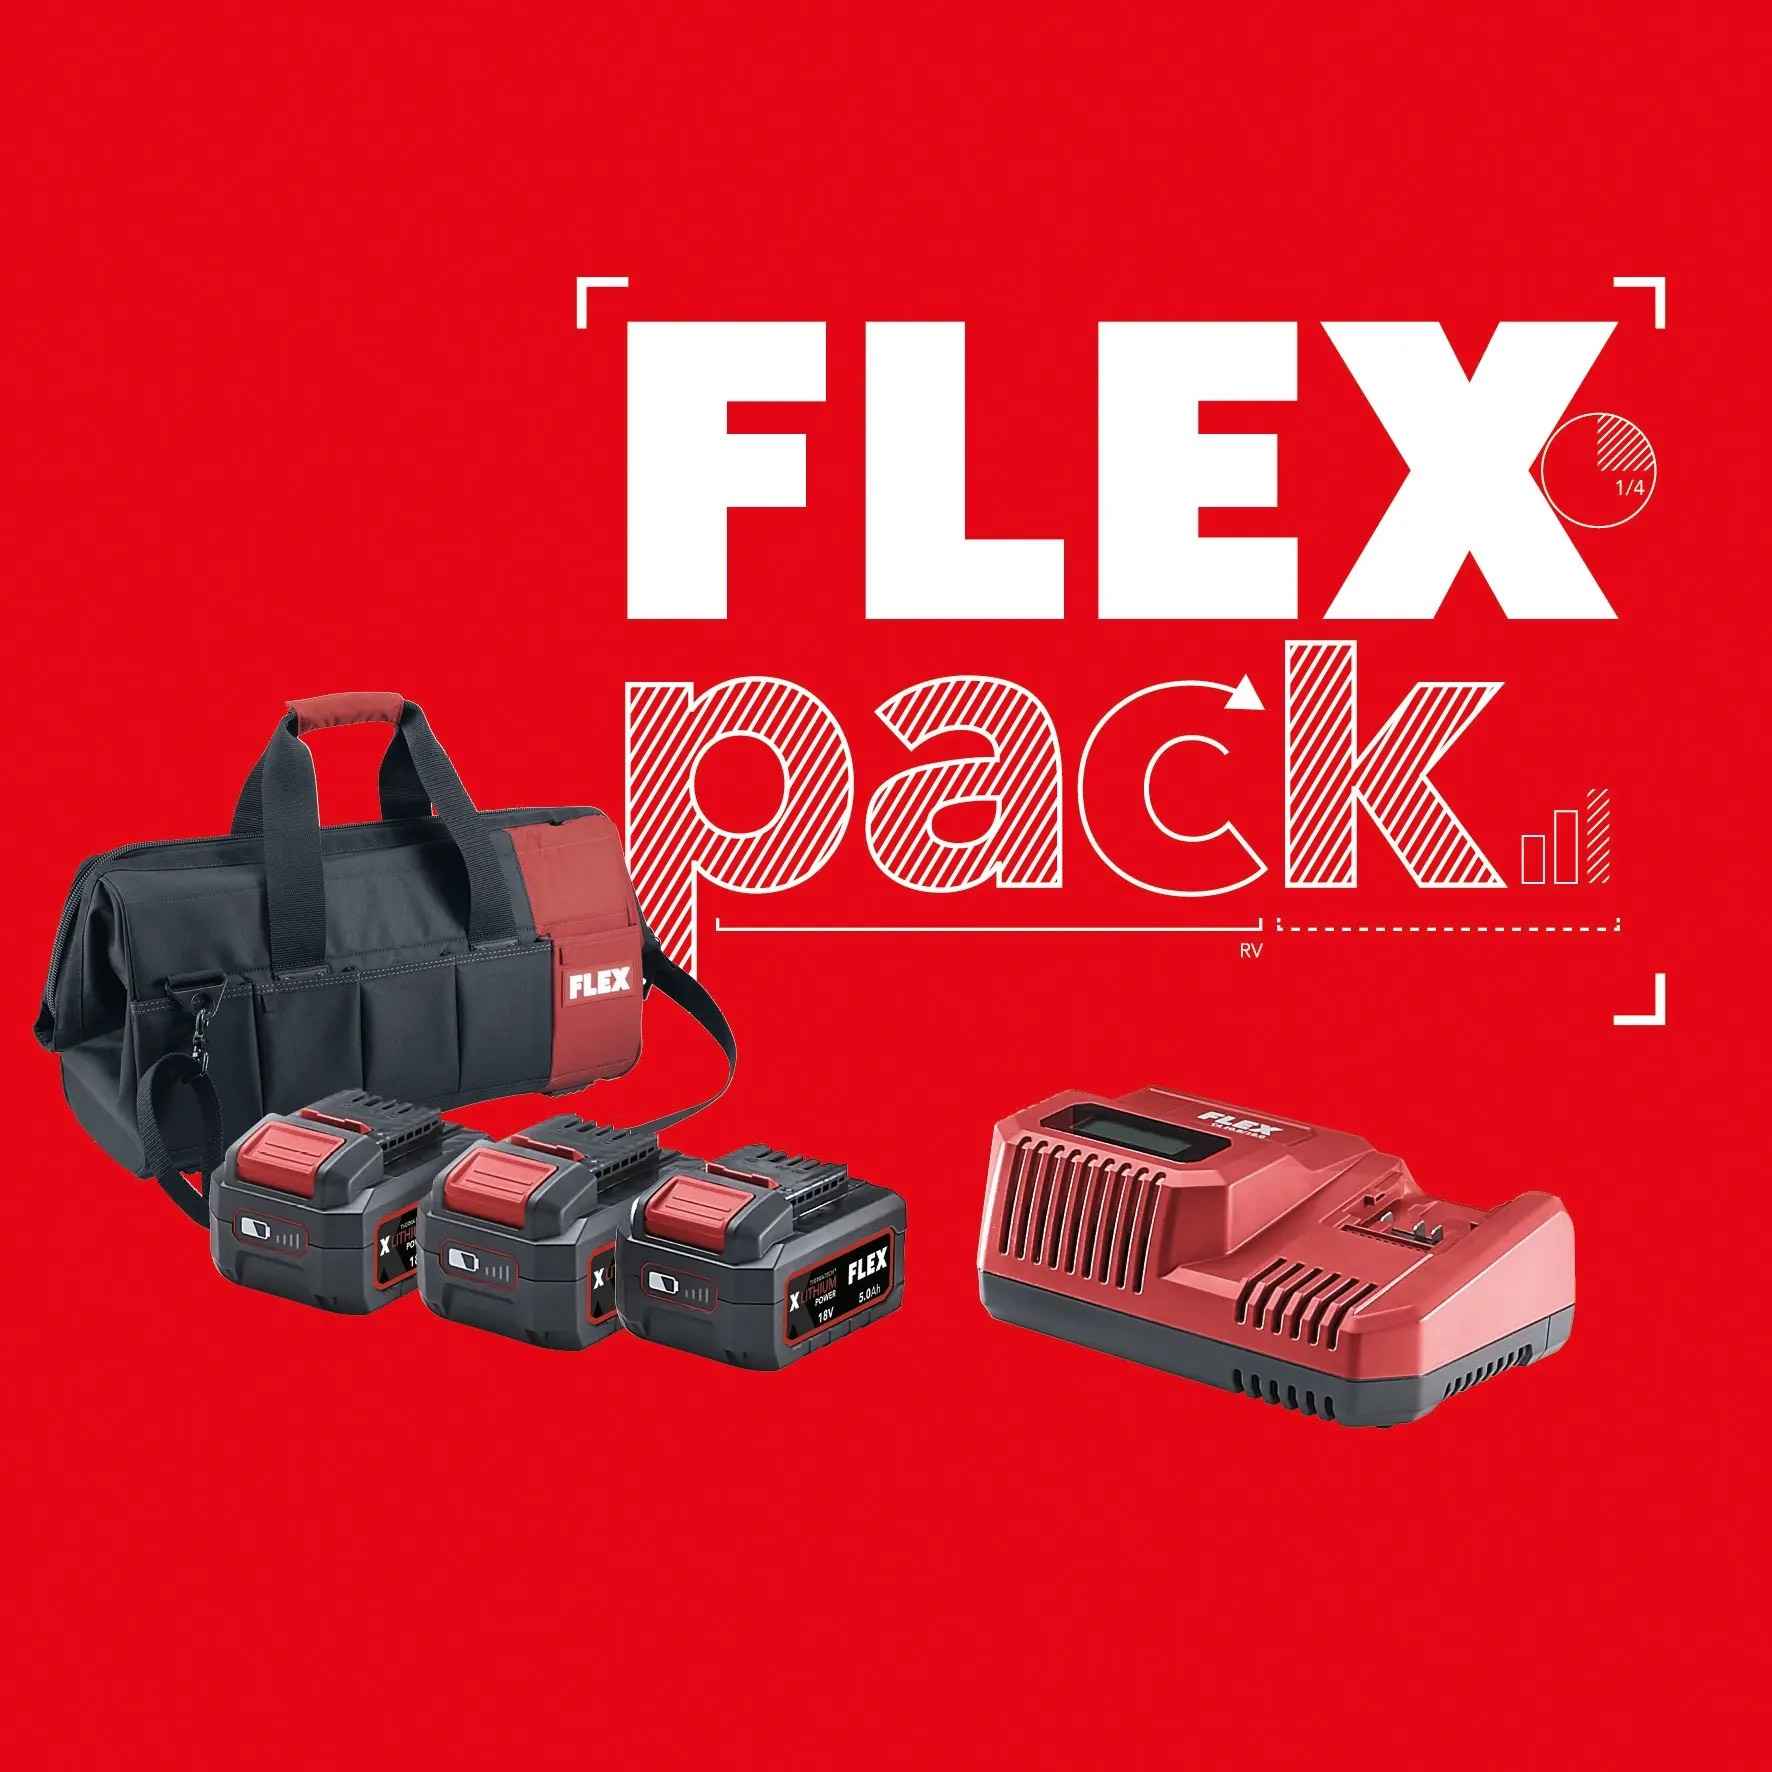 FLEX-Pack: 3 Geräte nach Wahl zuzüglich 3 Akkus AP 18.0/5.0 Ah, 1 Ladegerät und 1 praktische Transporttasche.